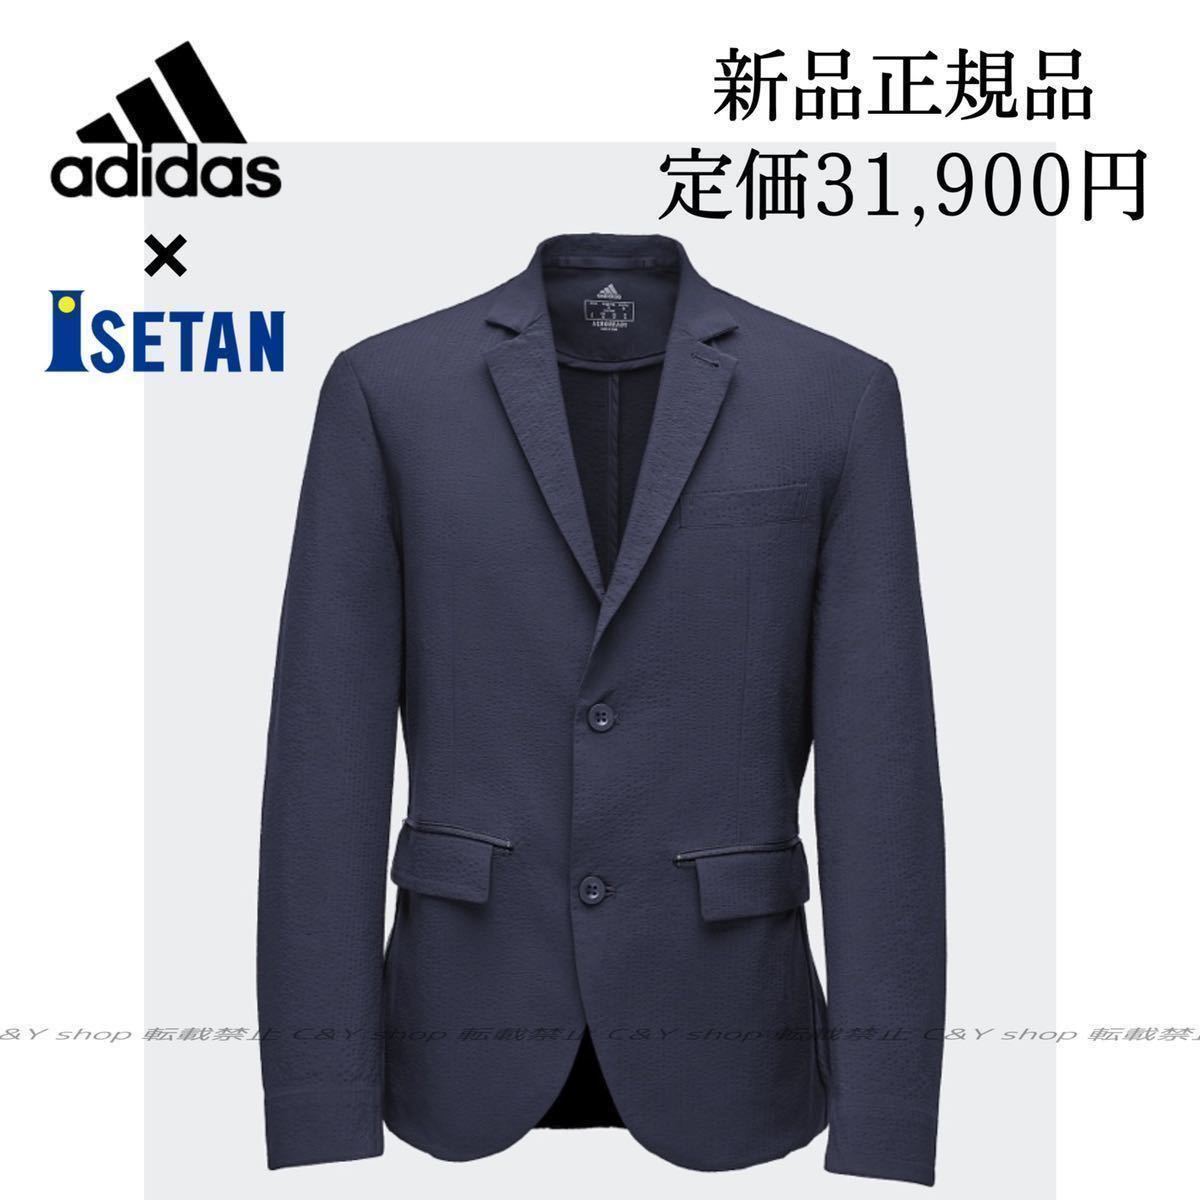 人気特価 ジャケット スーツ M アディダス 新品 adidas ISETAN 伊勢丹 - スーツジャケット